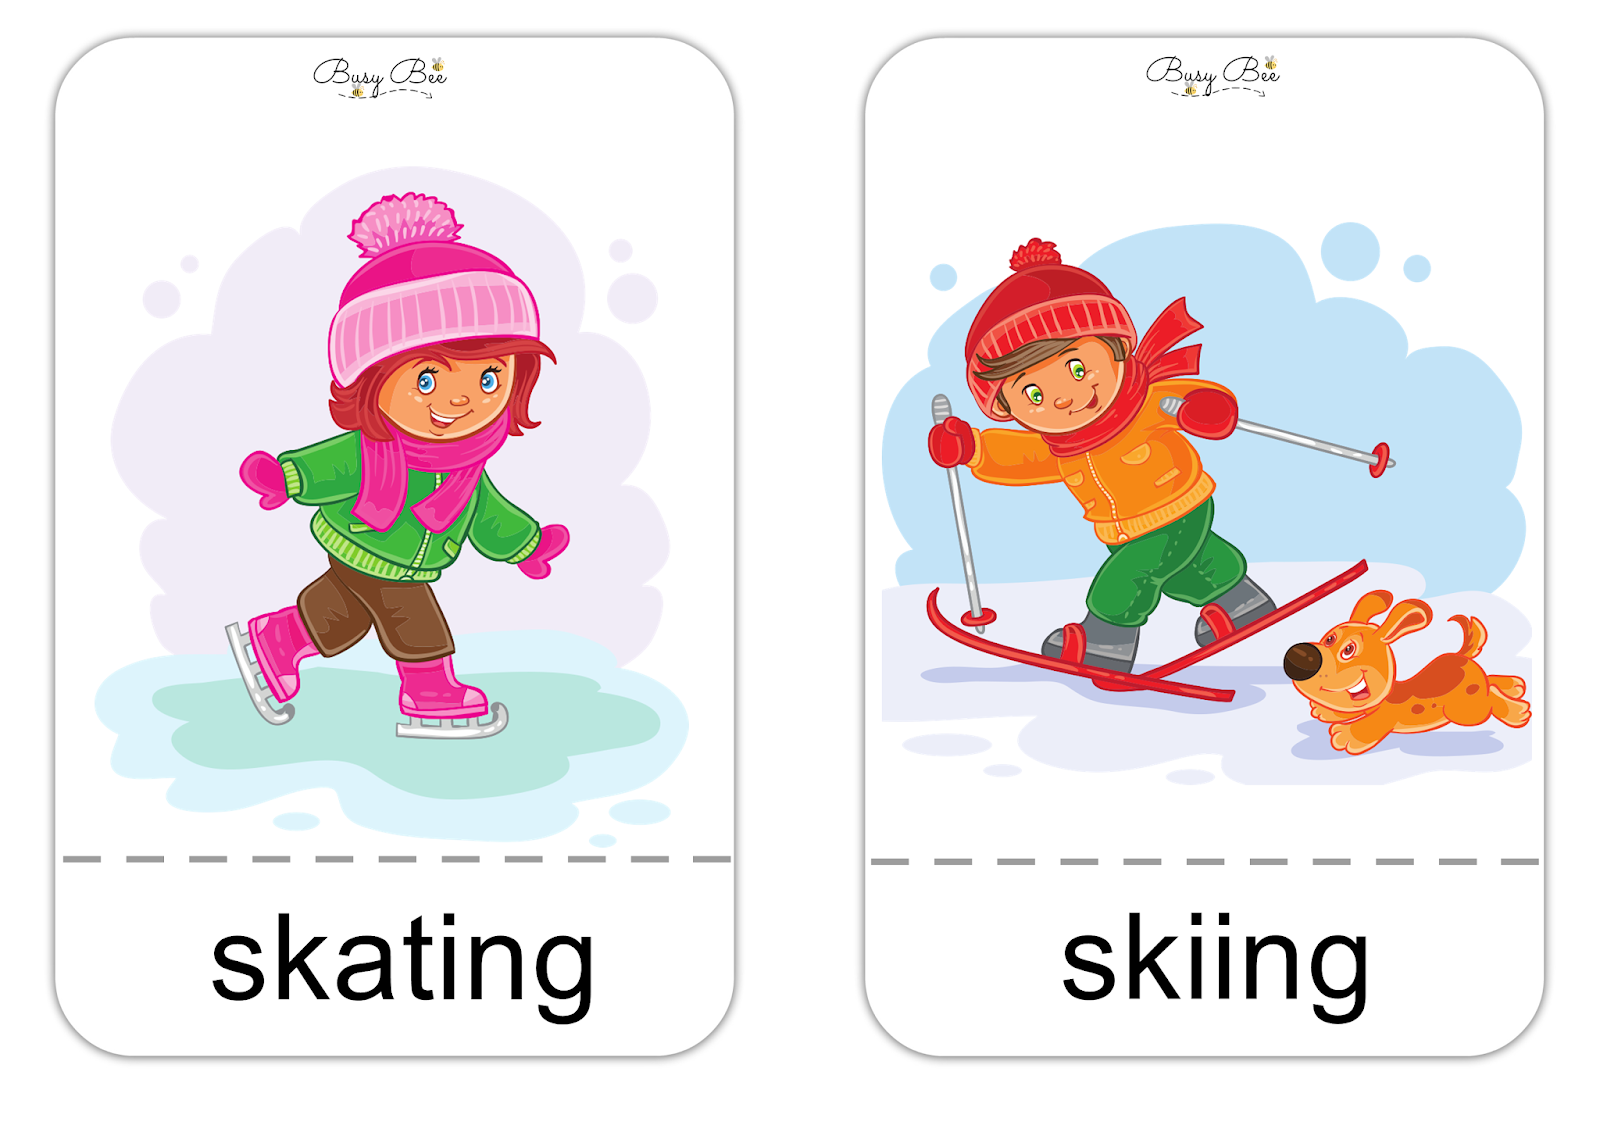 Skiing перевод с английского. Лыжи карточка для детей. Карточки Skating, Skiing. Лыжный спорт карточки для детей. Английский Ski.